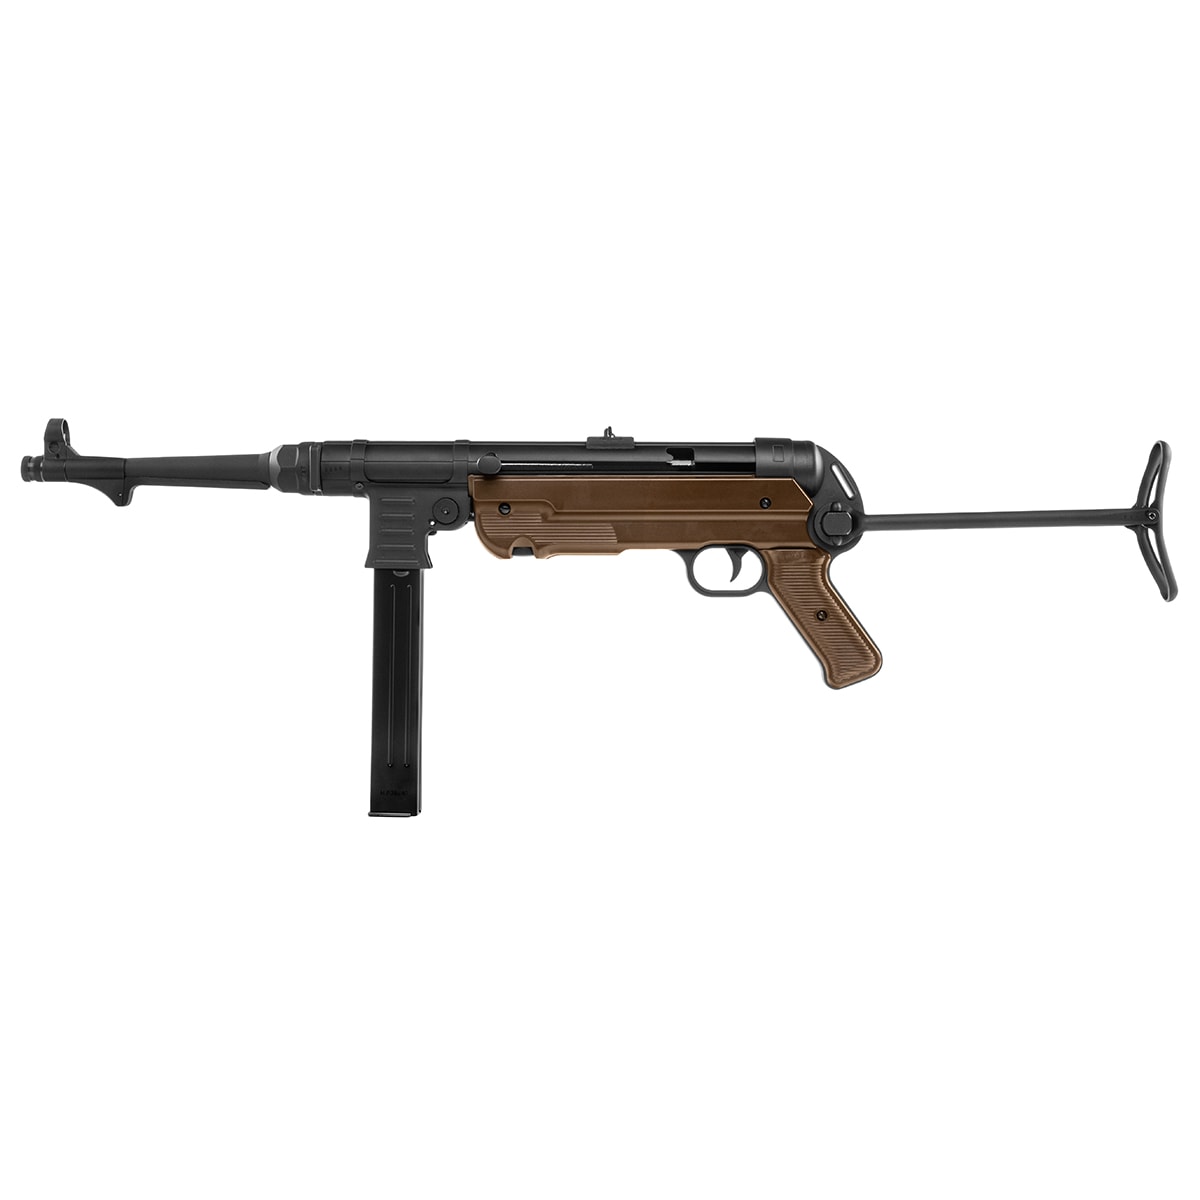 Pistolet maszynowy GBB Cybergun MP40 - Black